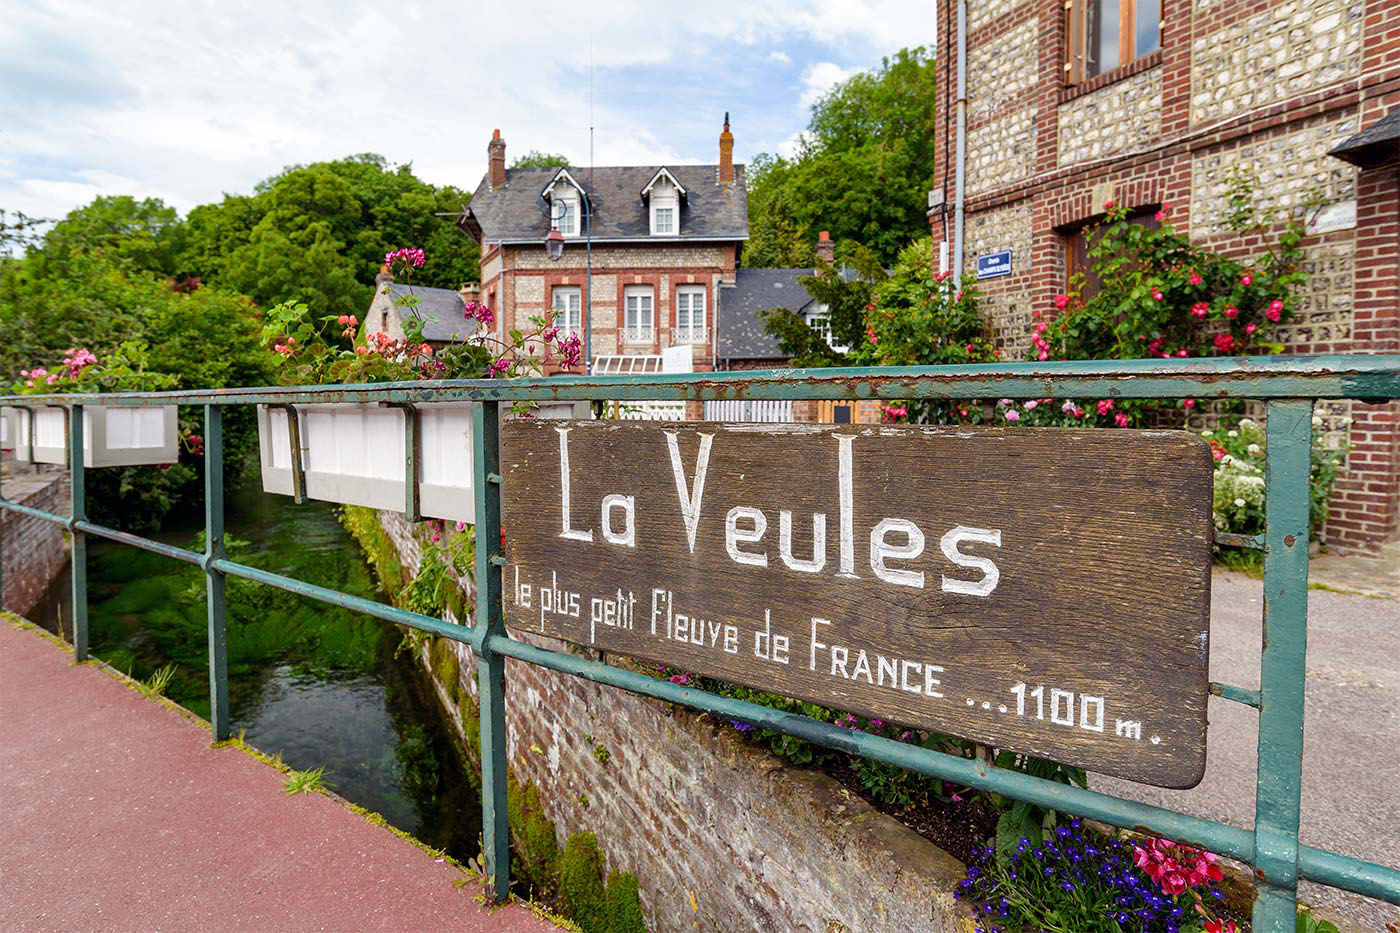 La Veules à Veules-les-Roses, le plus petit fleuve de France